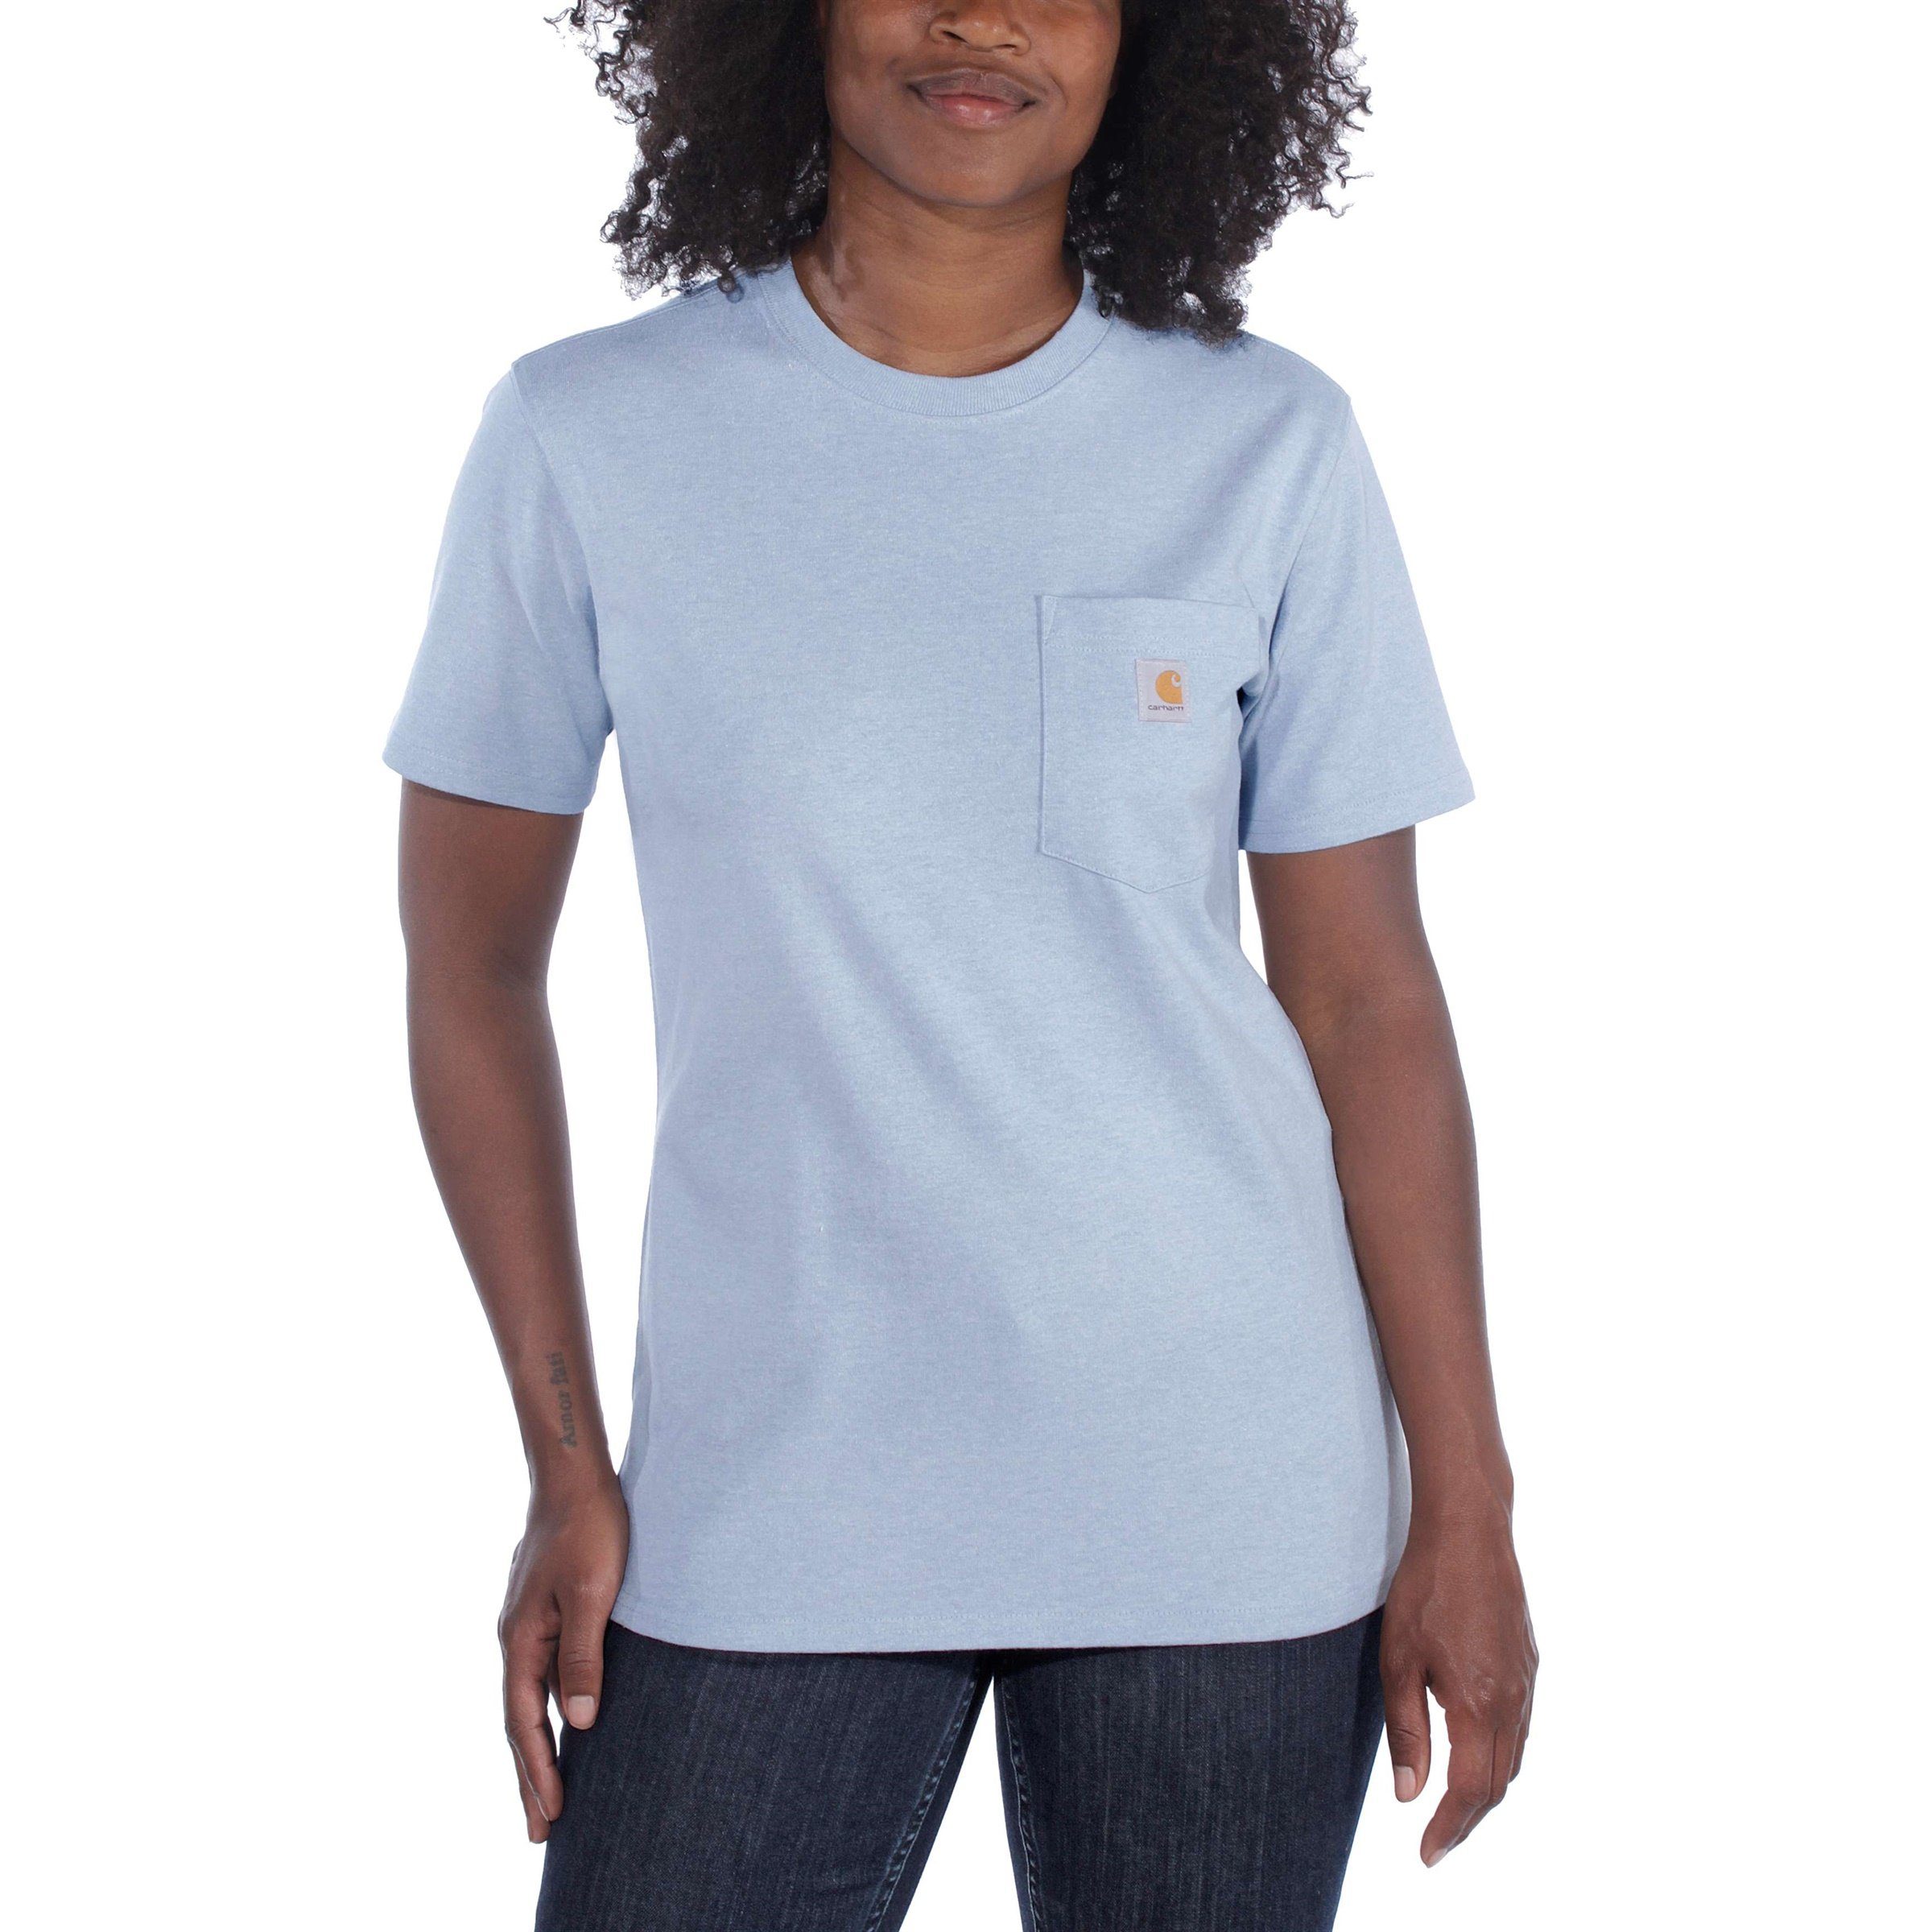 T-Shirt Carhartt Heavyweight Fit Adult Pocket Carhartt soft lavender Loose Short-Sleeve heather Damen T-Shirt